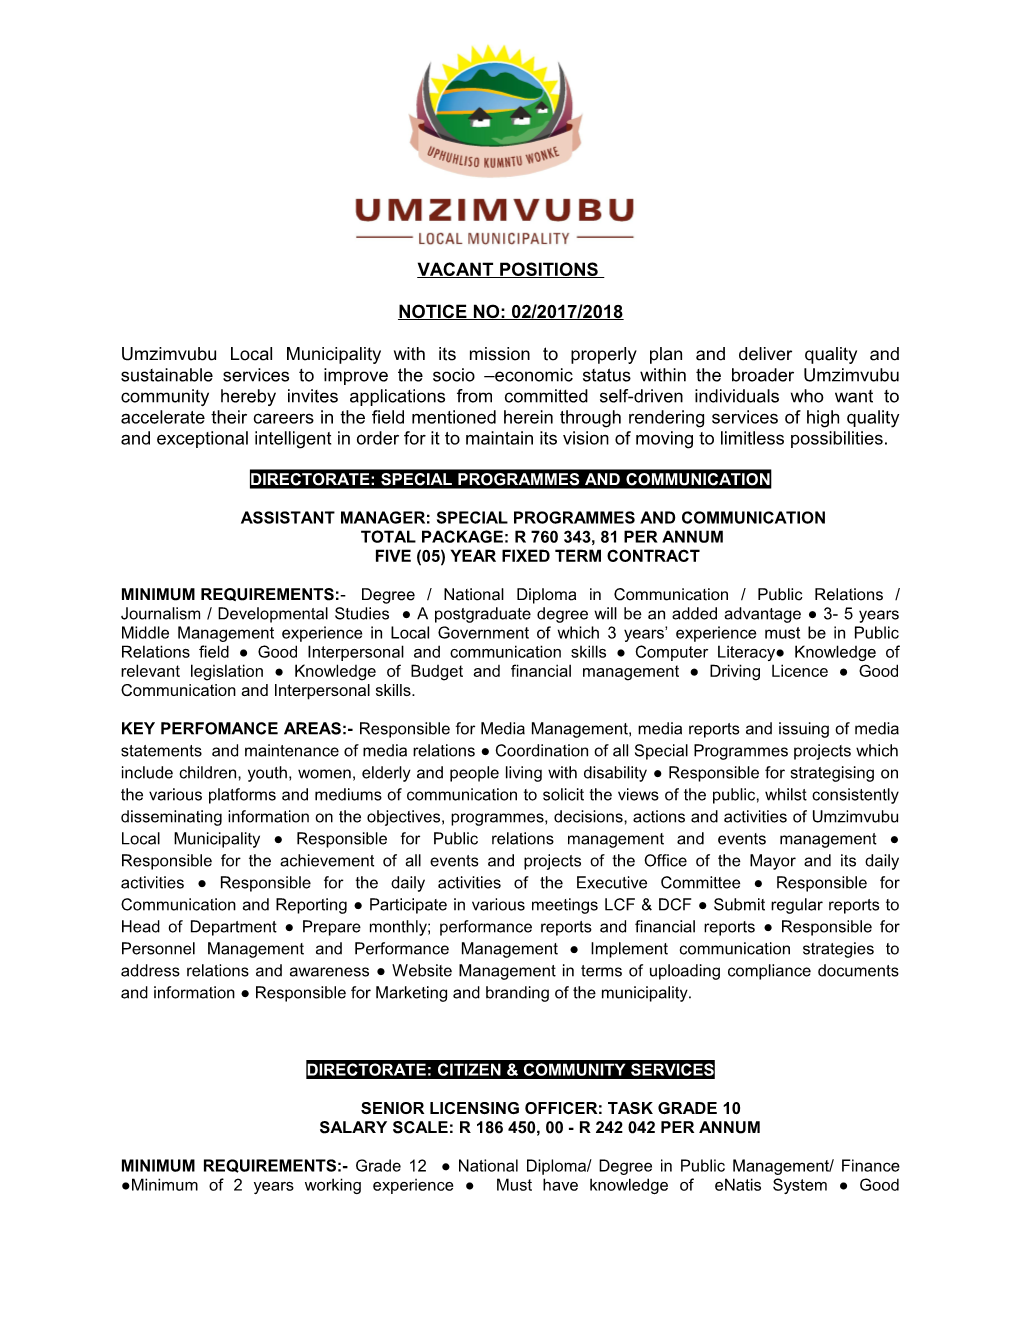 Umzimvubu Local Municipality